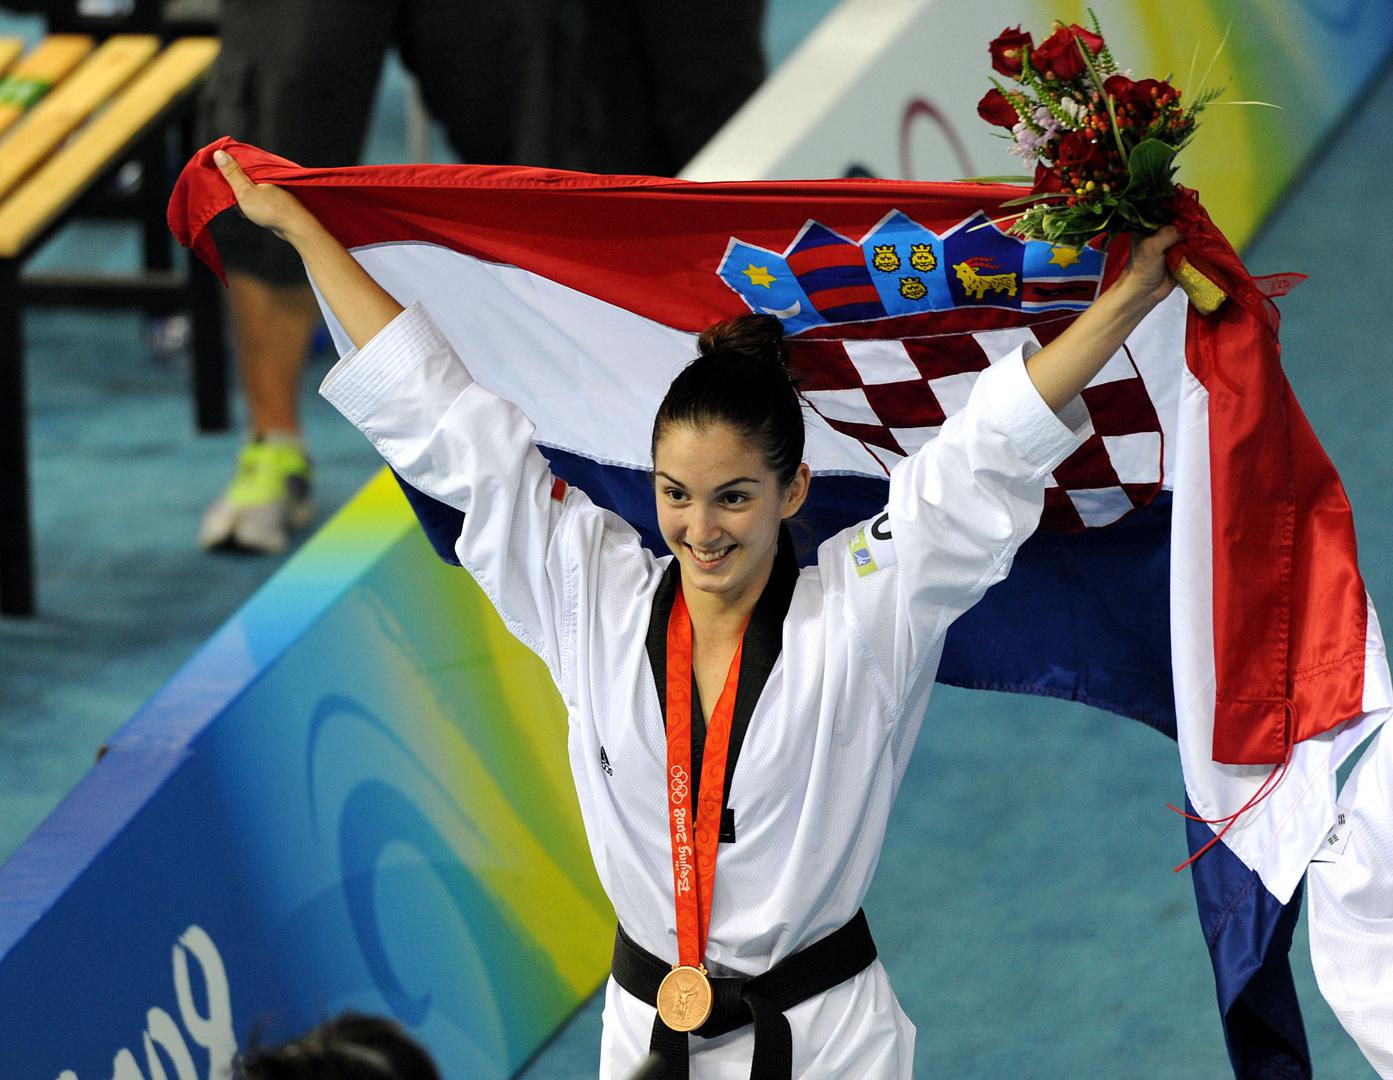 17. Prva hrvatska olimpijska medalja u taekwondou! Martina Zubčić slavi osvajanje bronce na Olimpijskim igrama u Pekingu 2008.